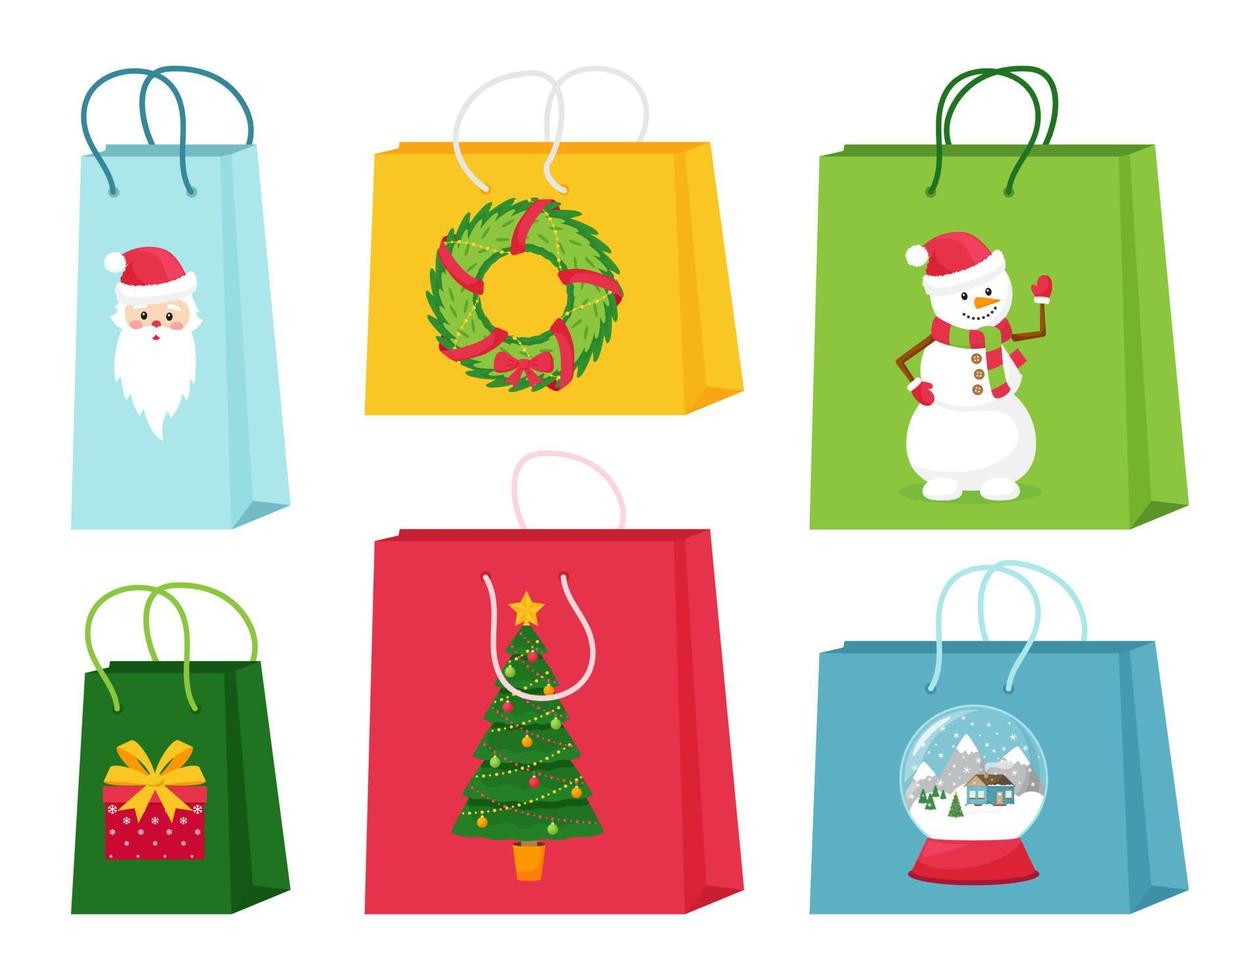 un set di regali o borse della spesa con elementi natalizi. simpatiche illustrazioni con personaggi e simboli di natale. illustrazioni vettoriali isolate su sfondo bianco.